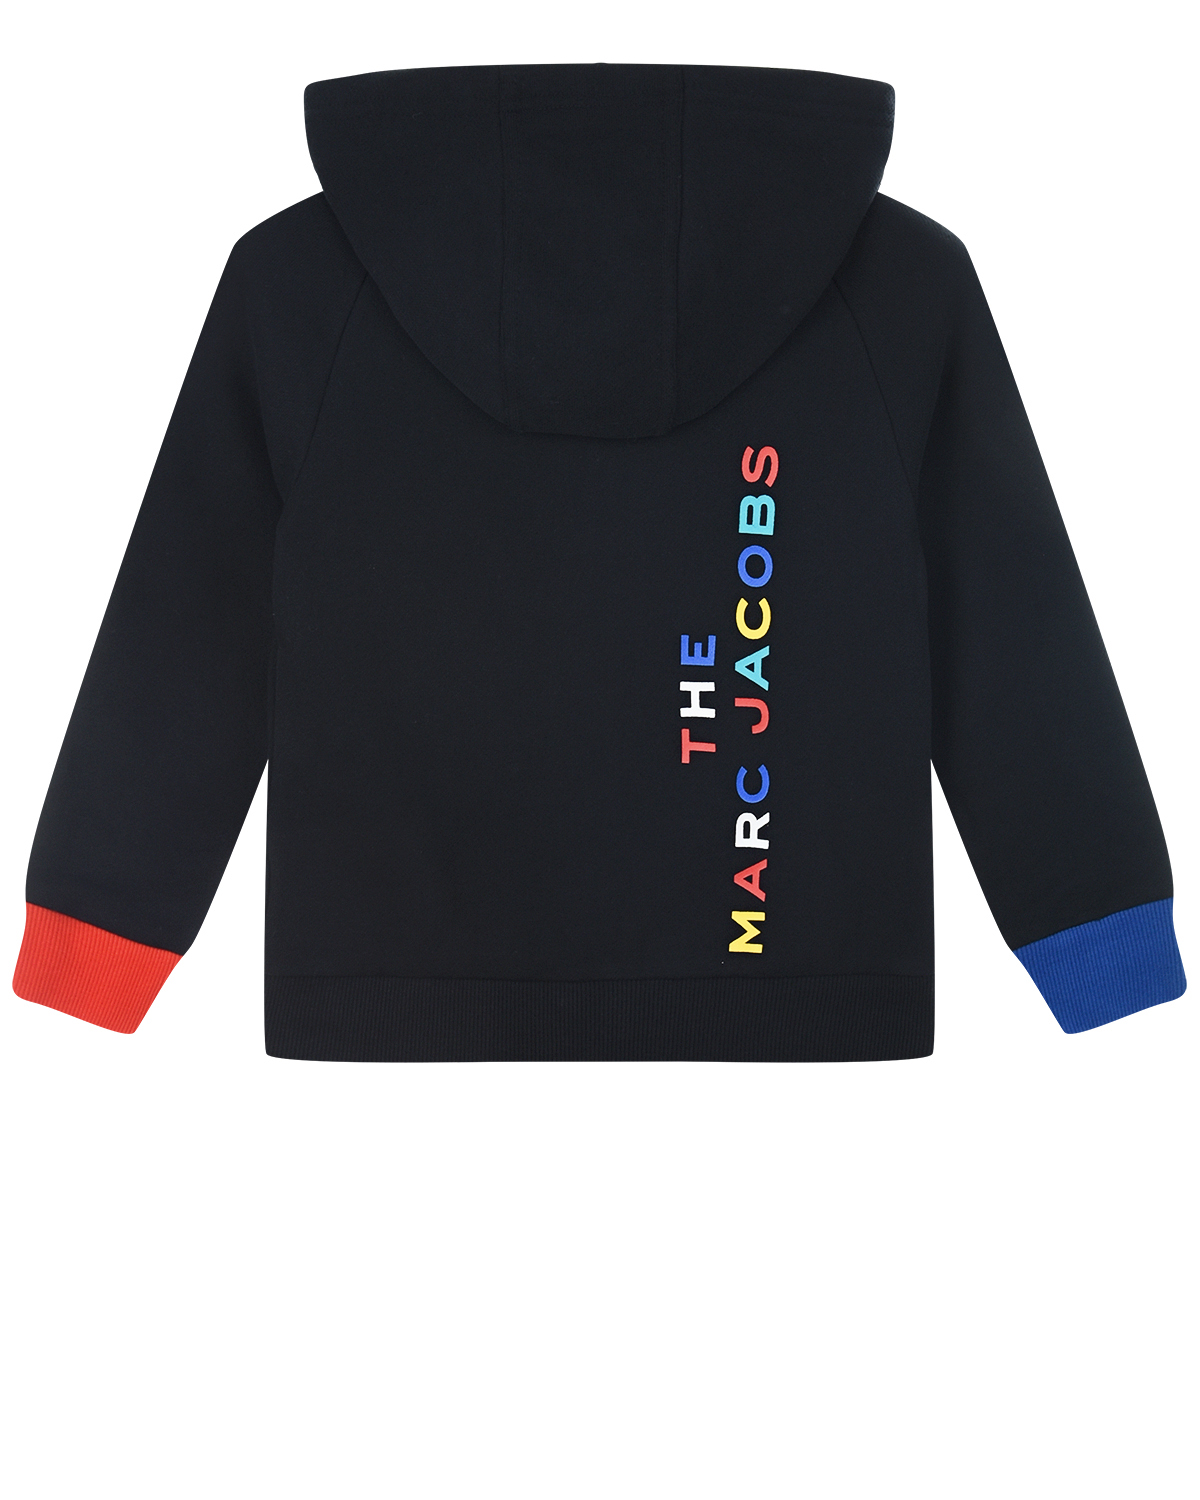 Черная спортивная куртка с разноцветными манжетами Little Marc Jacobs детская, размер 110 - фото 2